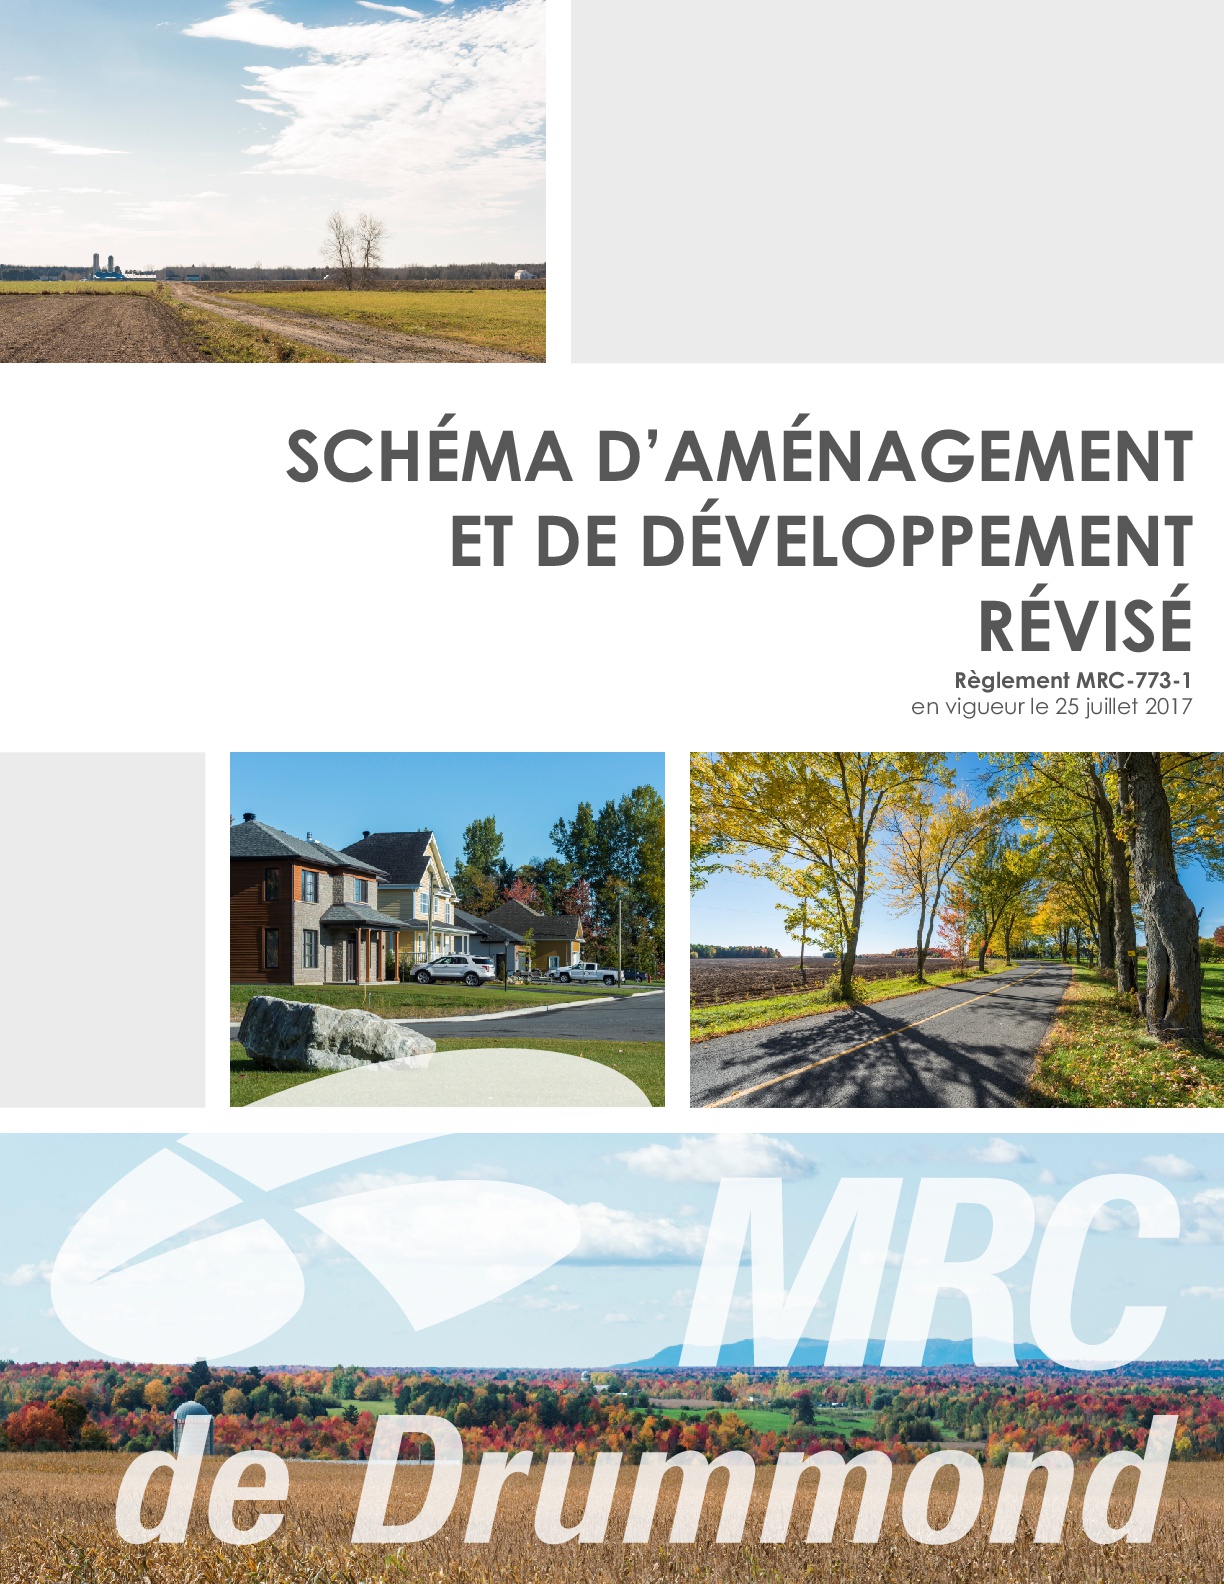 Le schéma d’aménagement révisé est approuvé par Québec